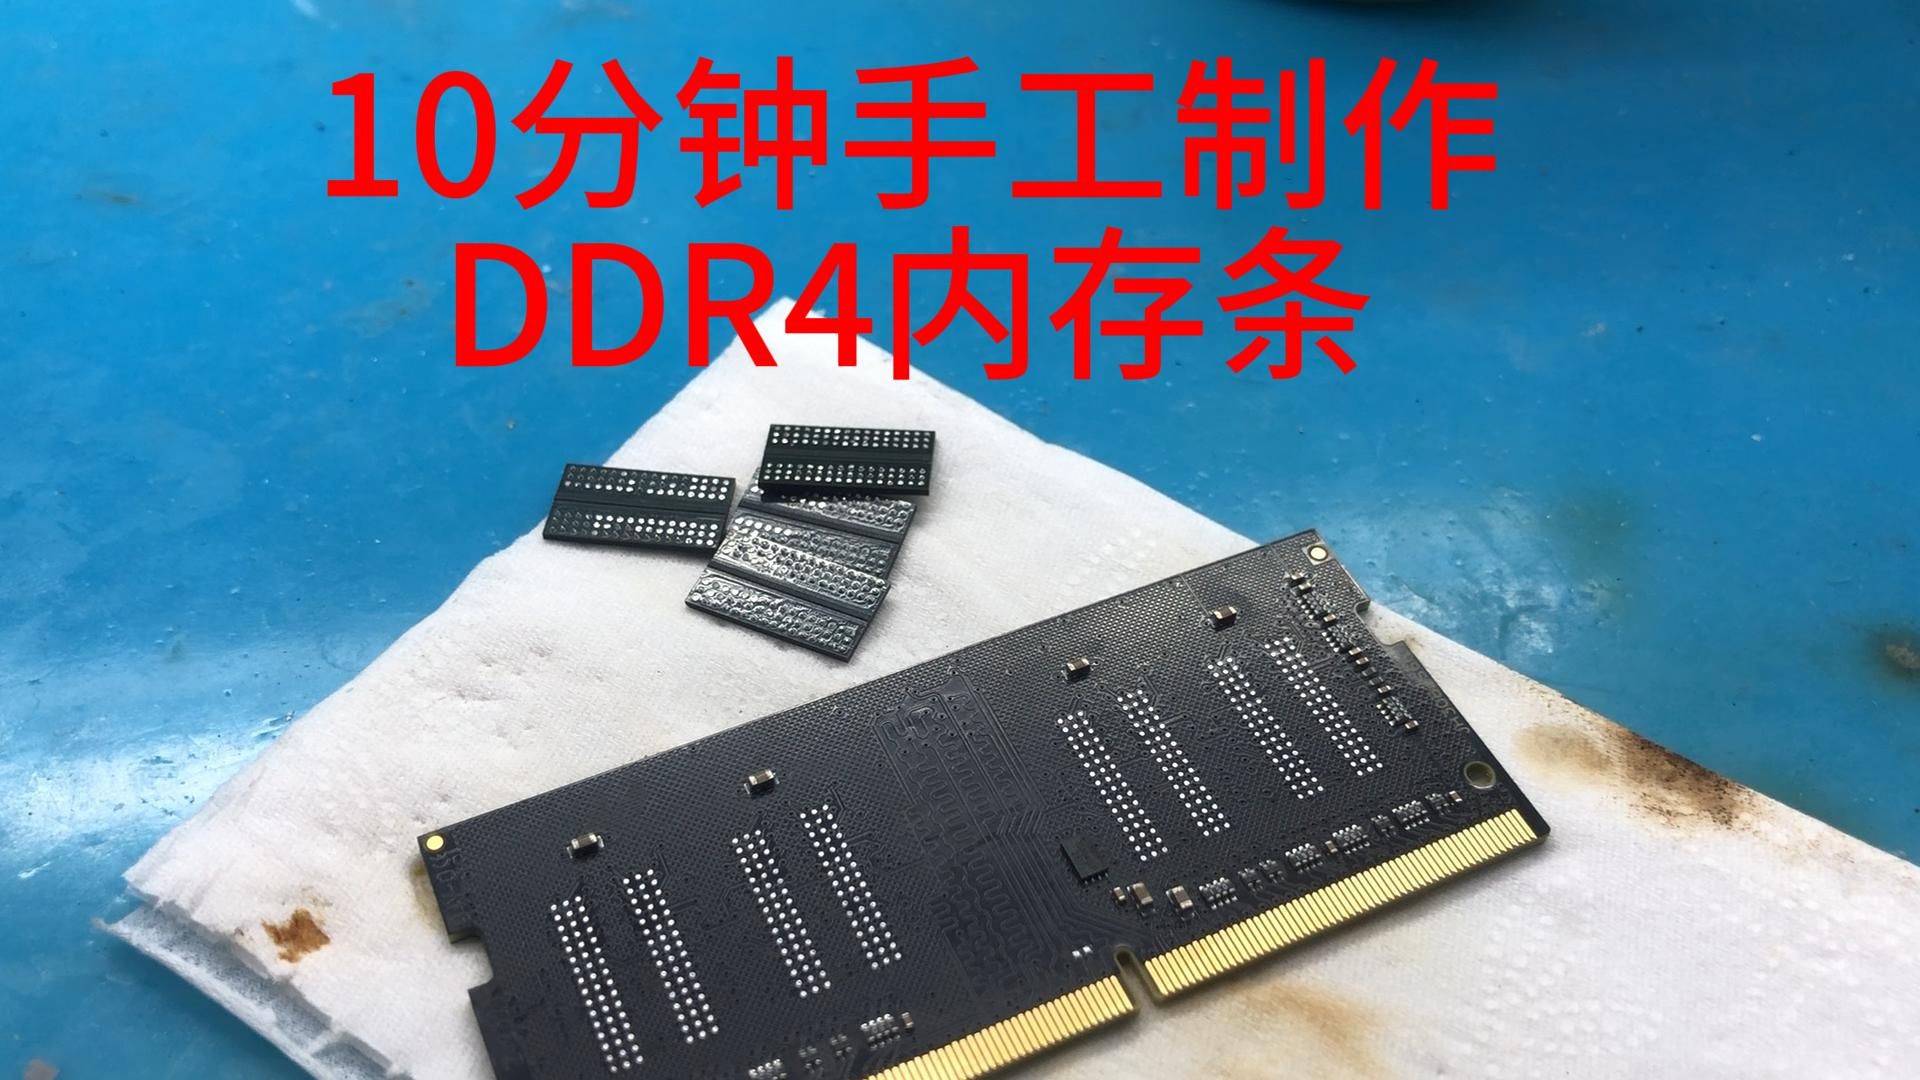 十分钟手工制作DDR4内存条--真不如买一条便宜